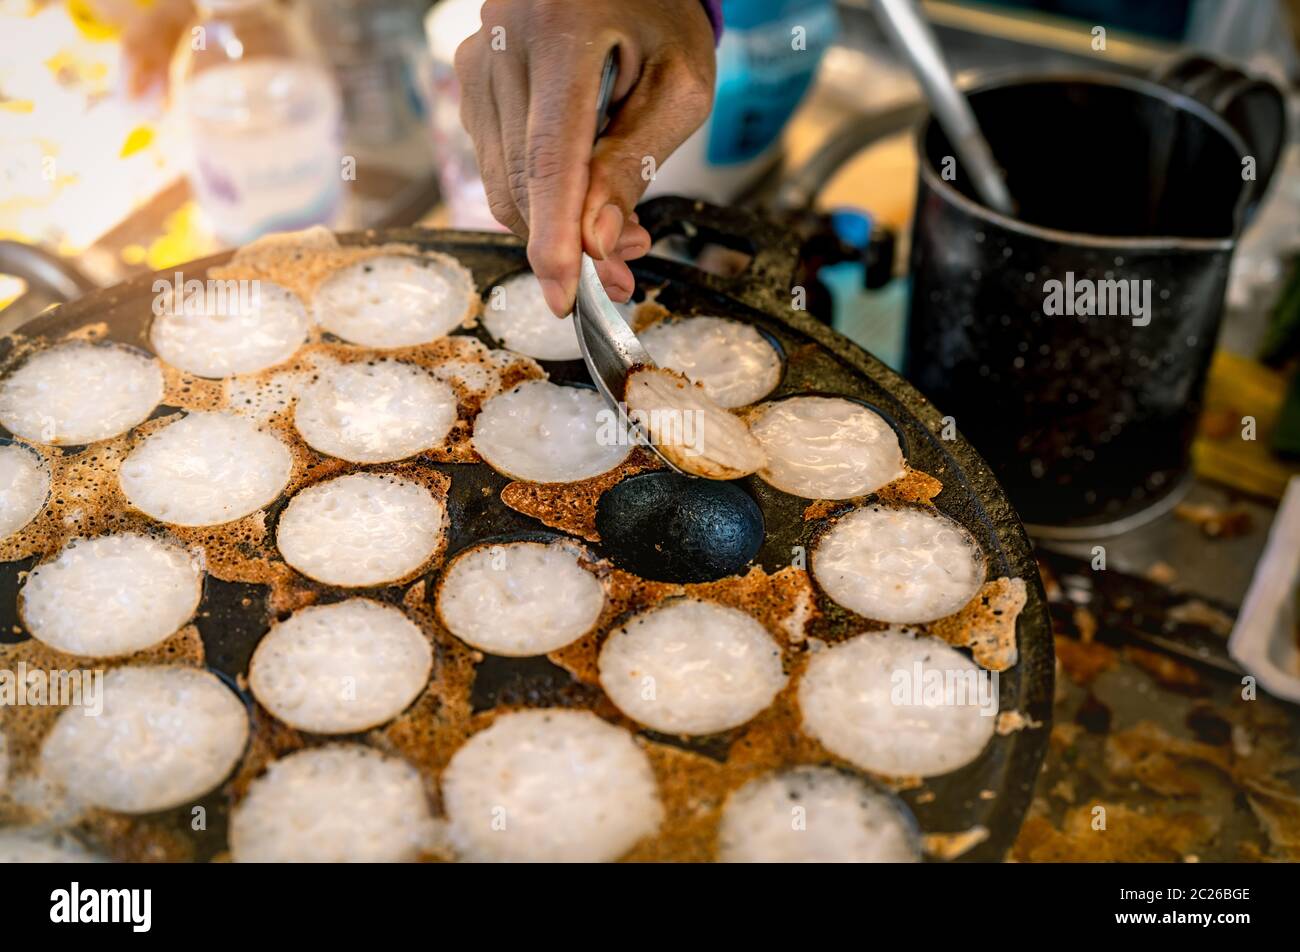 Mörtel - geröstete Gebäck oder "Kanom Krok' ist für traditionelle thailändische Dessert. Frau Hand entfernen Kanom Krok von Herd durch die Löffel. Street Food in Thailand. Thai d Stockfoto